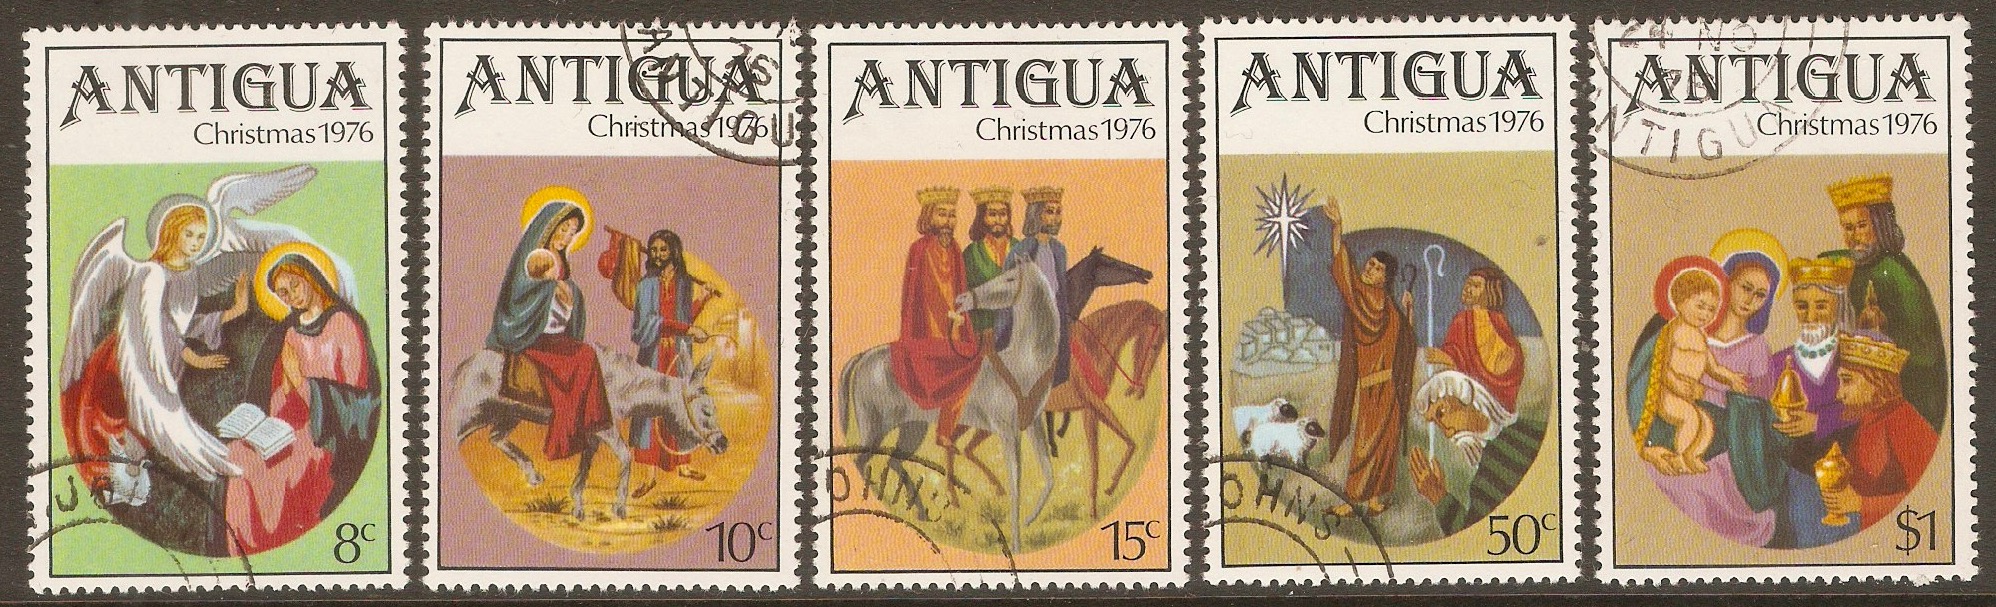 Antigua 1976 Christmas set. SG514-SG518. - Click Image to Close